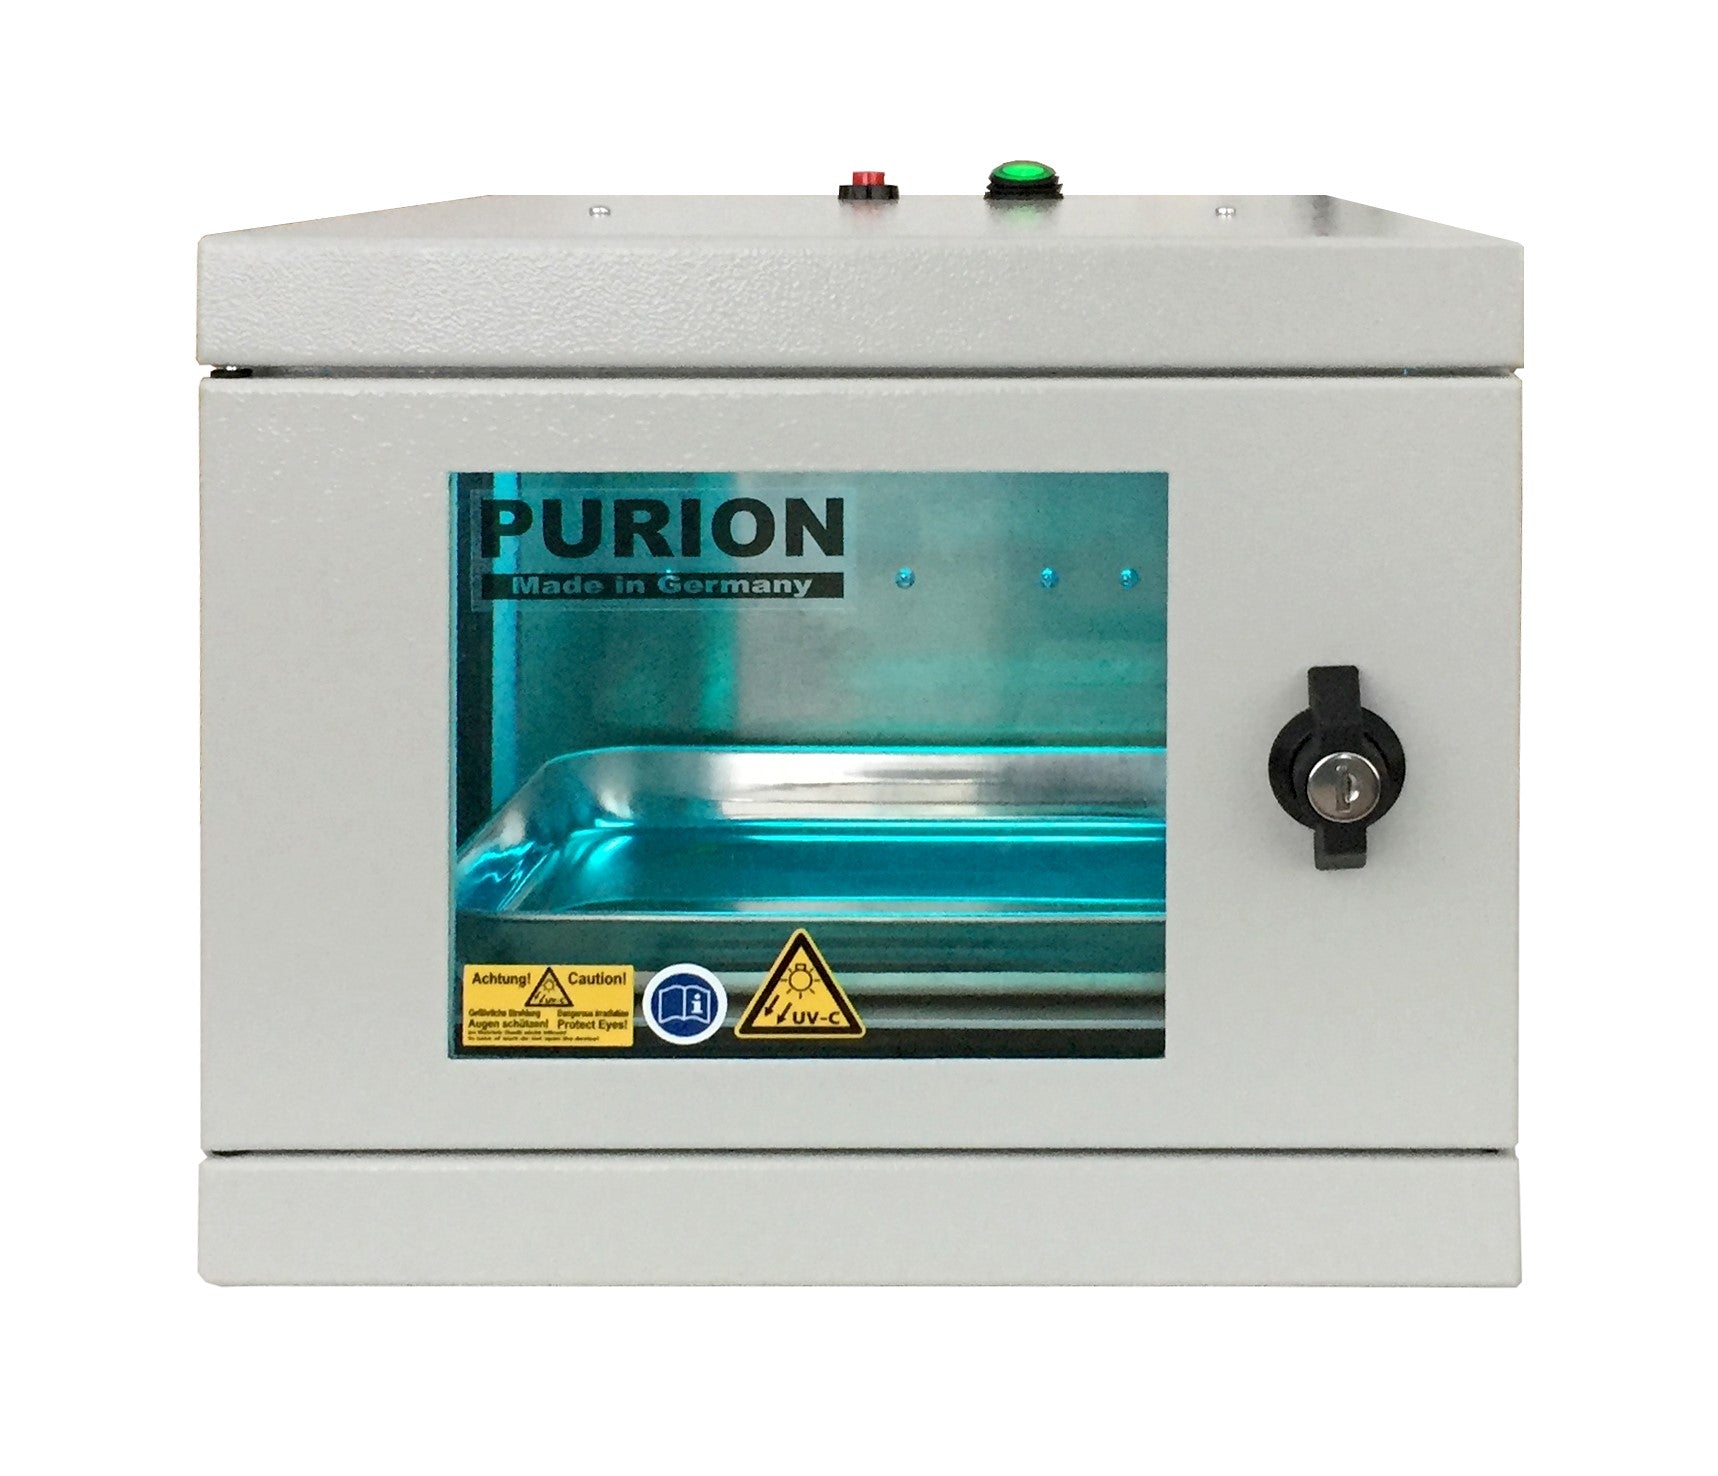 Das PURION UVC Box Small Bundle ist ein leistungsstarkes Gerät zur Desinfektion, das mithilfe der Purion-Ionen-Technologie Keime beseitigt.